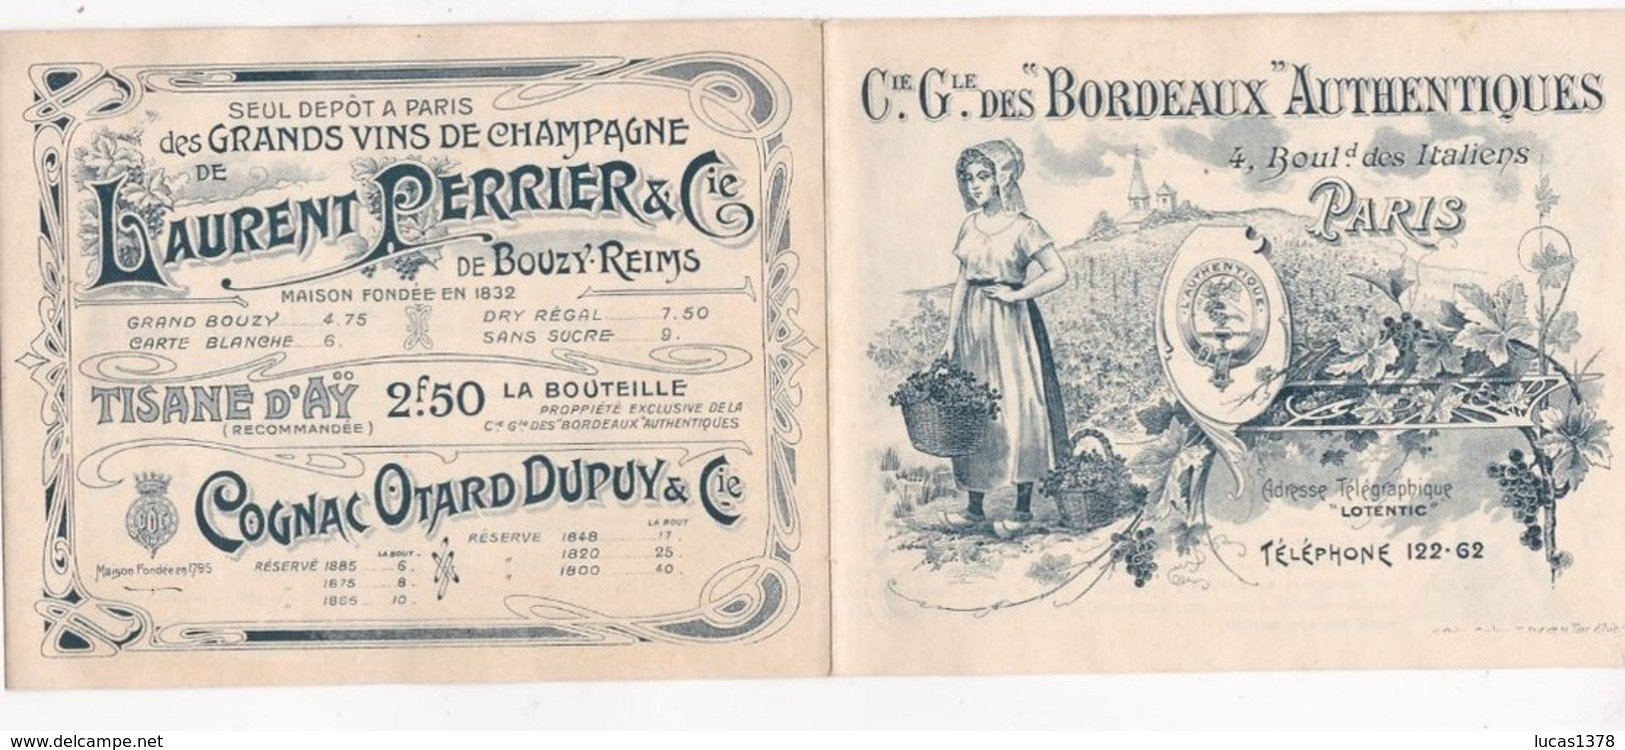 EXCEPTIONNEL TARIFS GRANDS CRUS BORDEAUX 1877 A 1896 !!! CIE GENERALE DES BORDEAUX AUTHENTIQUES !! - Alcolici